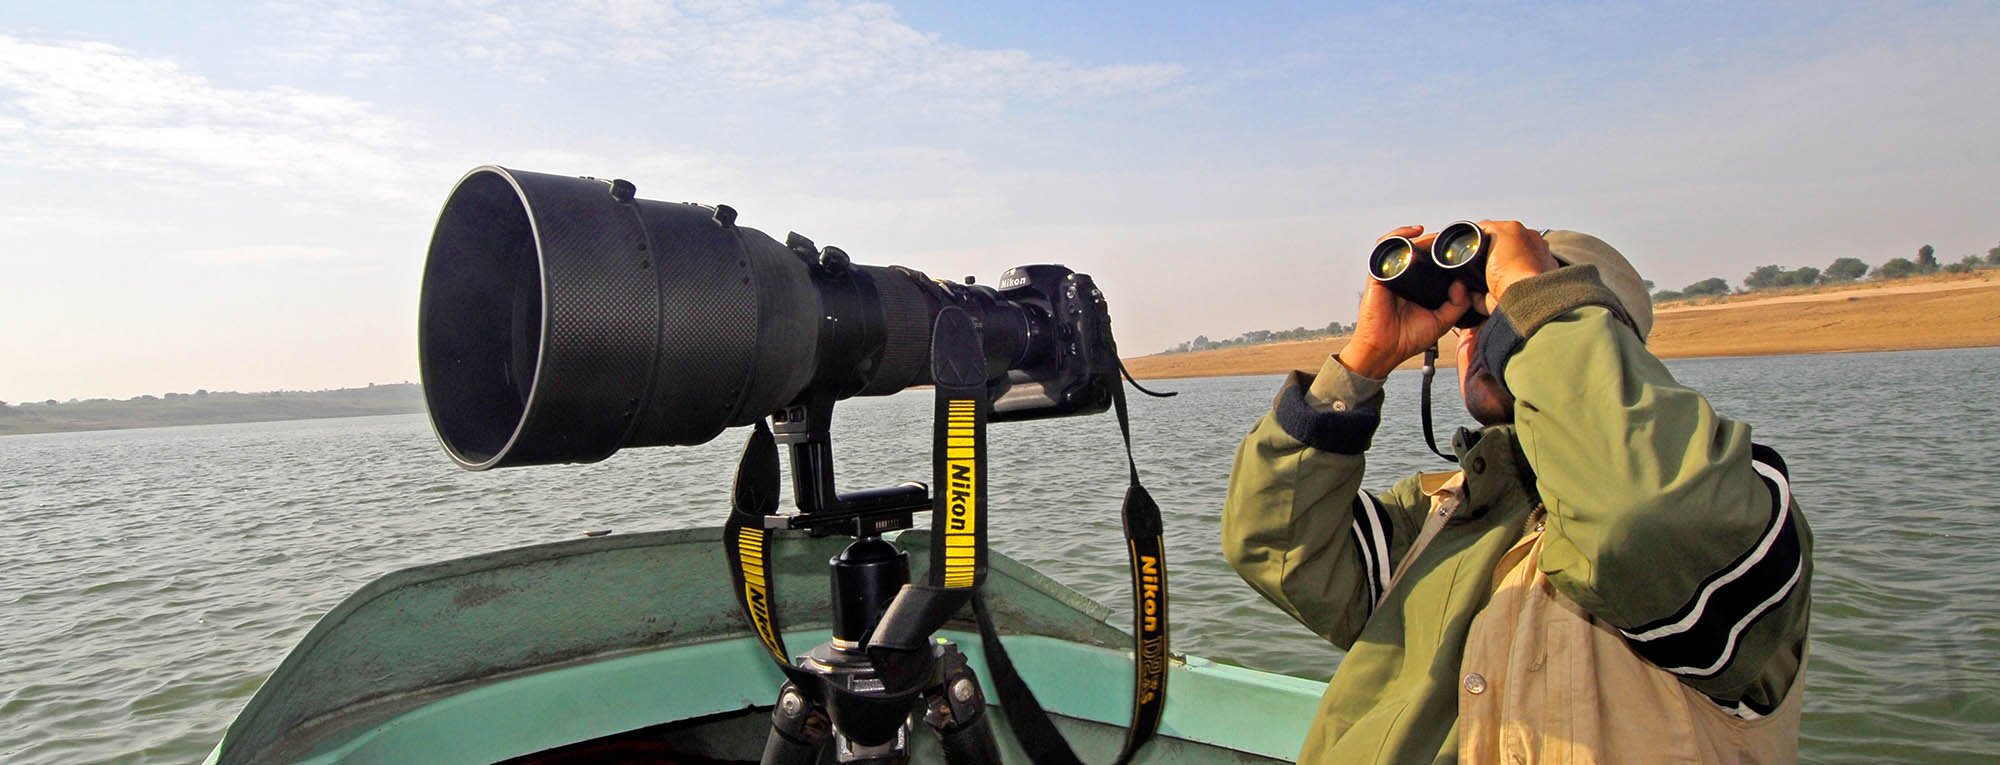 Chambal River safari photography.jpg